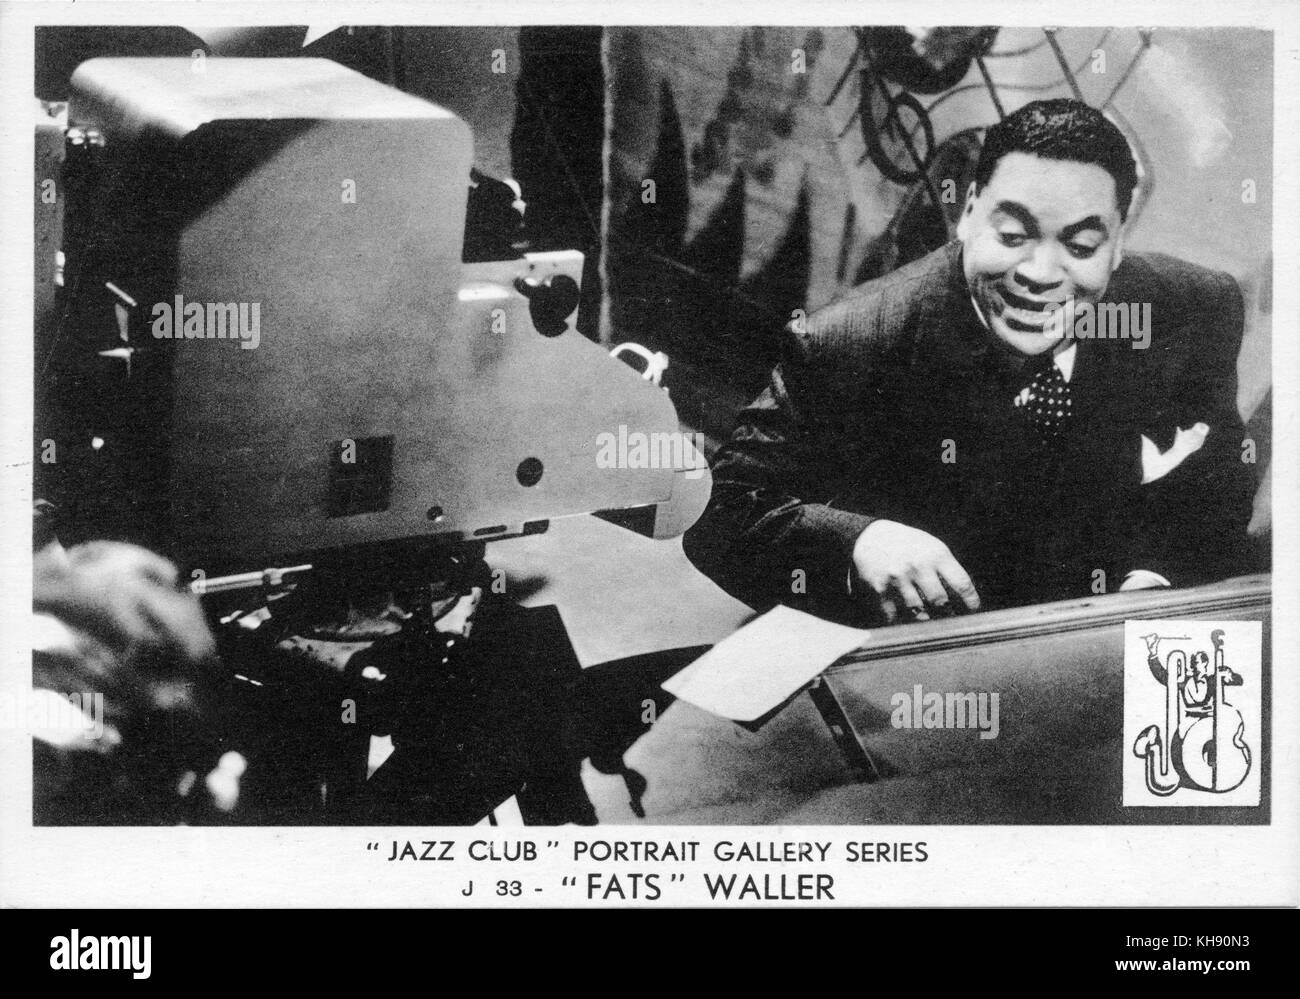 Fats Waller - portrait. Thomas Wright Waller, pianiste de jazz américain, chanteur et compositeur : 21 mai 1904 - 15 décembre 1943. N° 33 dans le 'Jazz Club' Portrait Gallery series. Banque D'Images